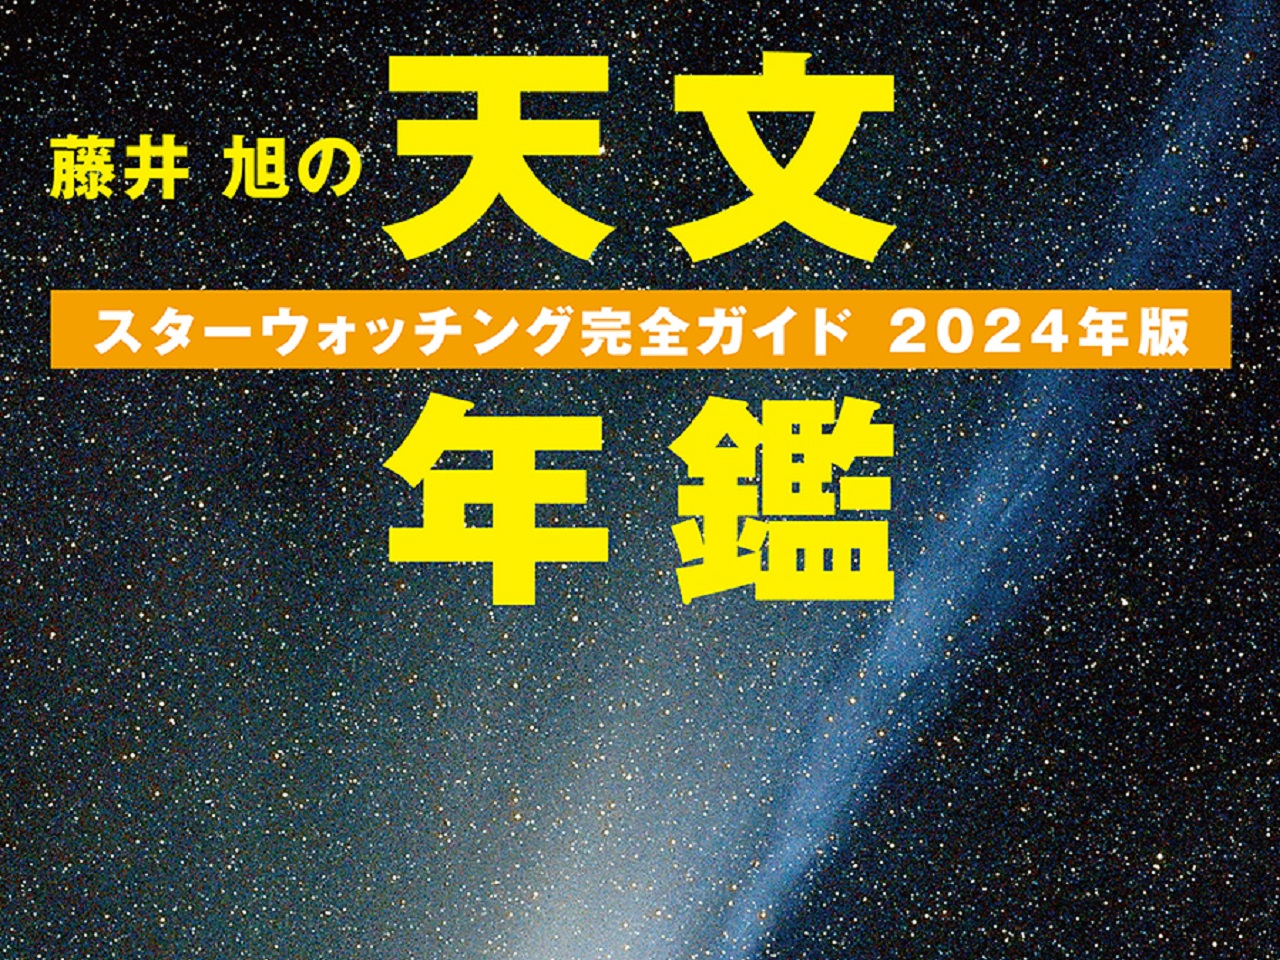 星空観察の初心者向けガイドブック「藤井 旭の天文年鑑」、2024年版発売